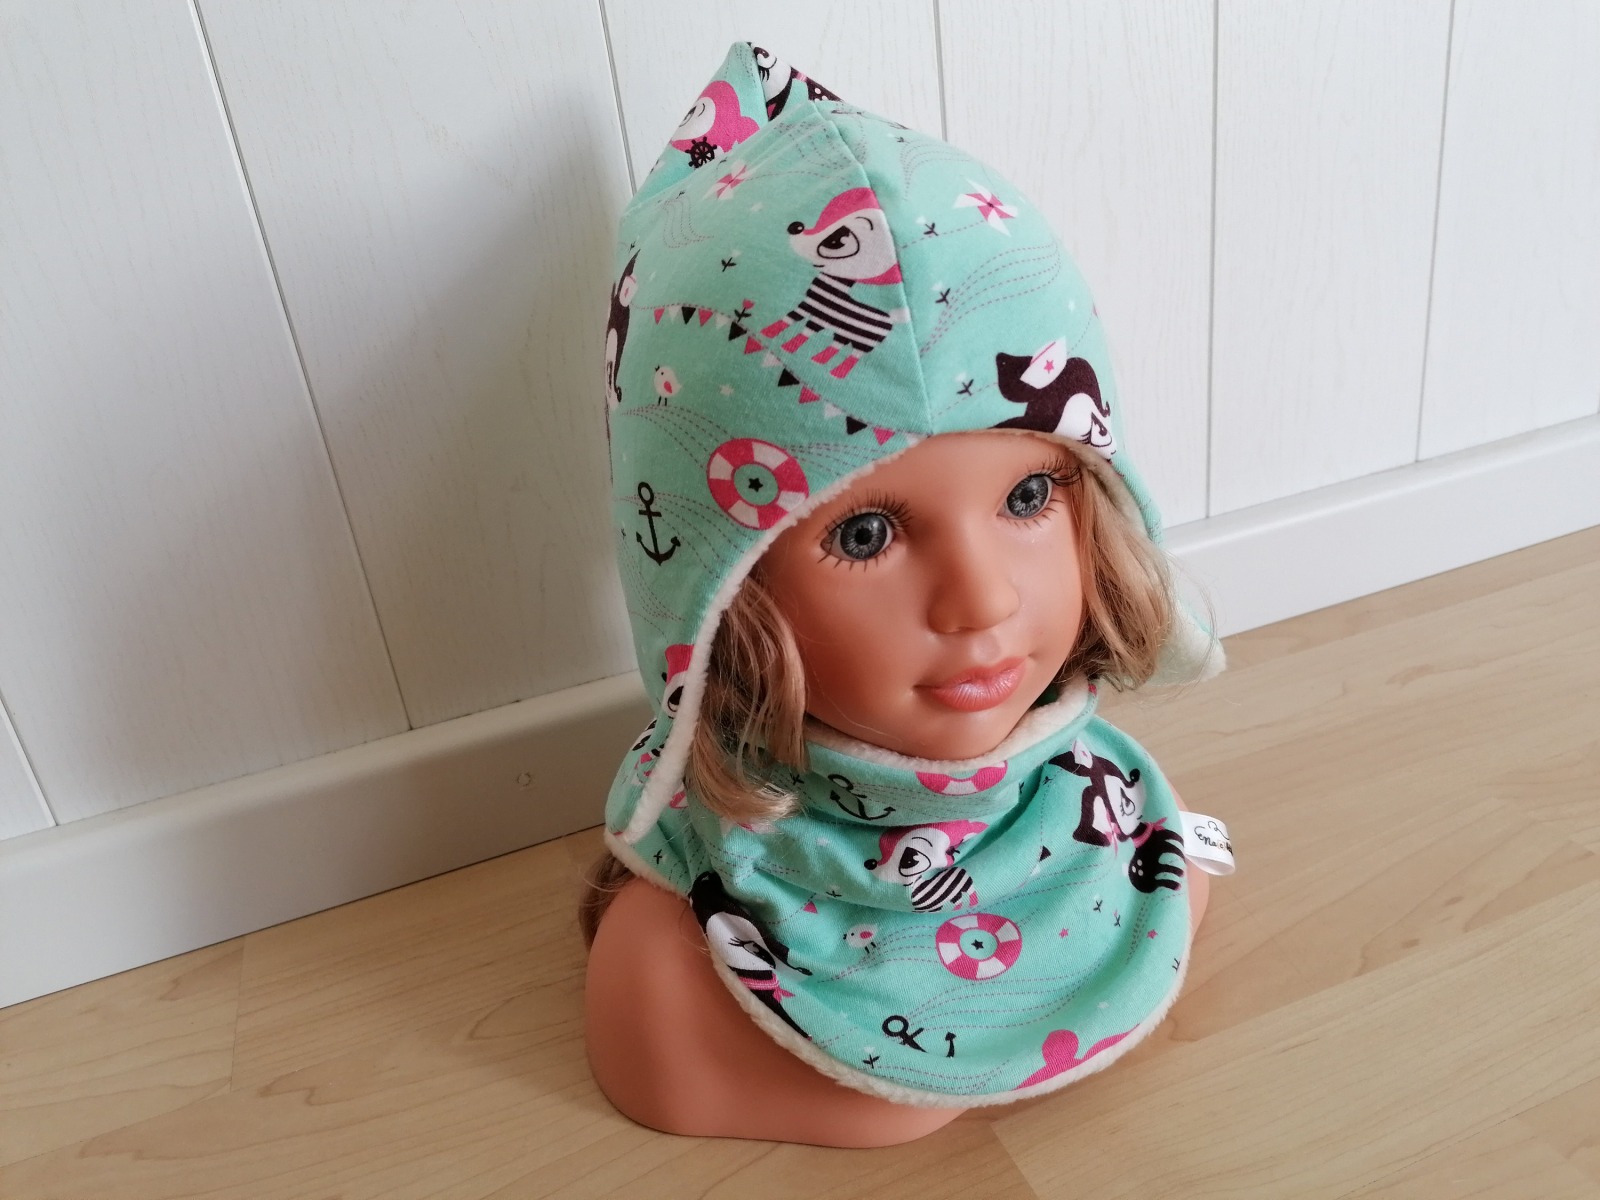 Baby Kind Zipfelmütze Ohrenmütze Hafenkitz mint mit Fleece oder Plüsch gefüttert Kopfumfang 34 - 55cm Wintermütze für Mädchen und Jungen 5